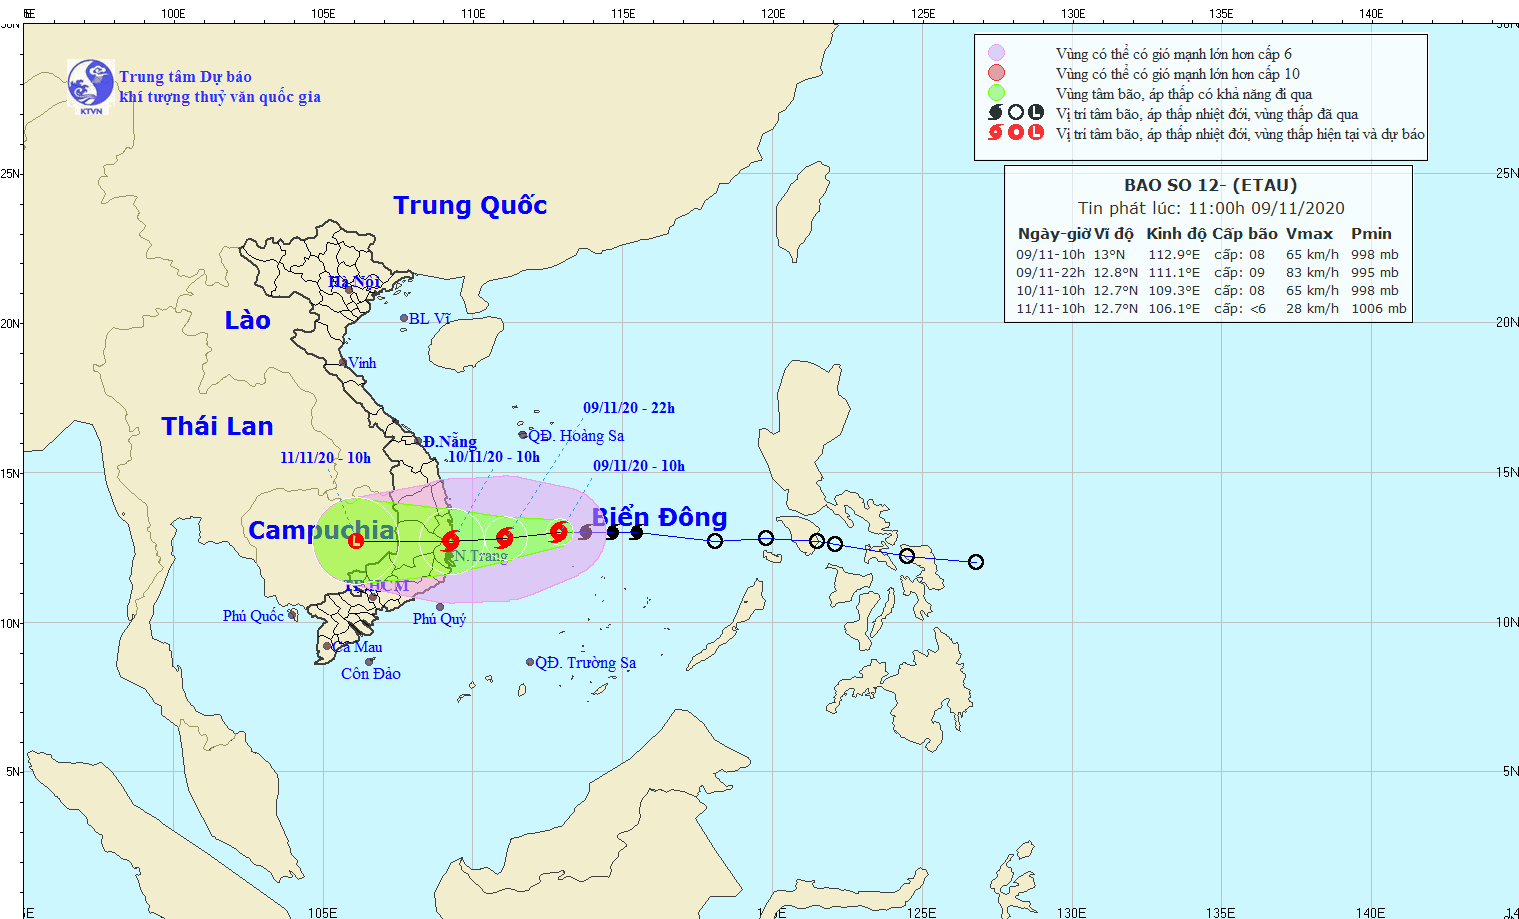 Bão gây mưa lớn từ Quảng Trị đến Khánh Hòa, 3 ngày nữa miền Trung lại có bão số 13  - Ảnh 1.